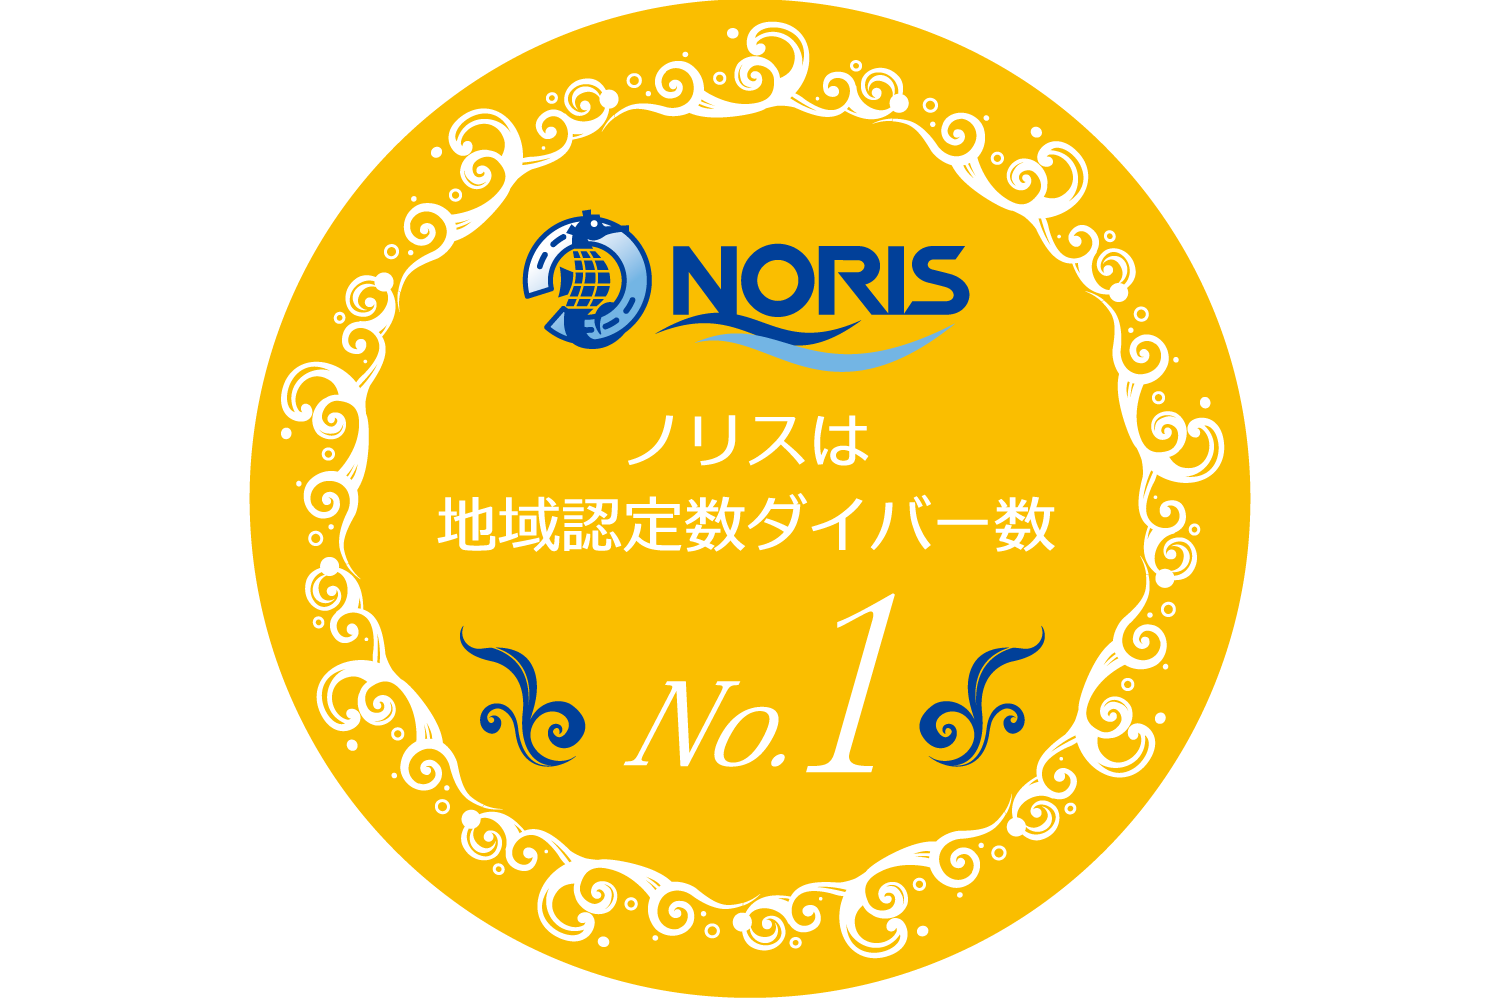 ノリスは地域認定ダイバー数No.1